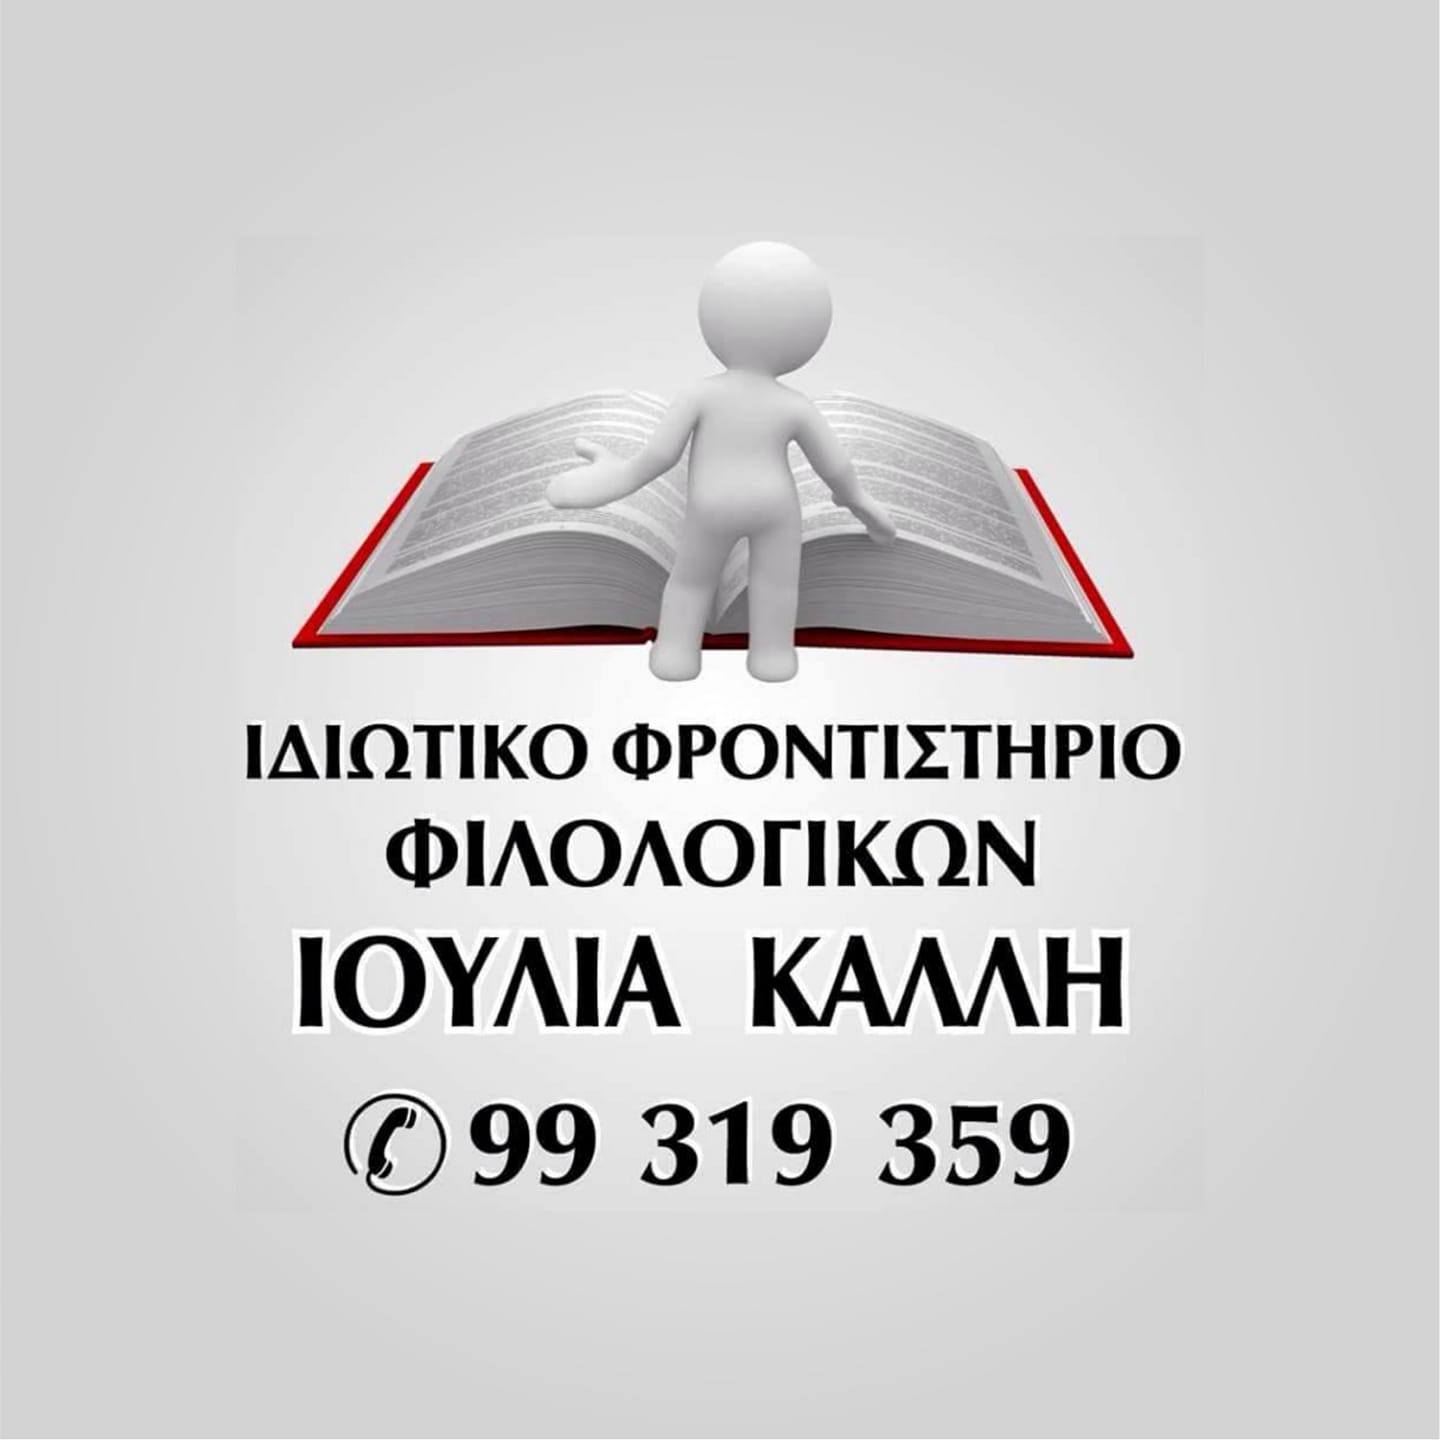 Ιδιωτικό φροντιστήριο Ιουλία Καλλή Logo